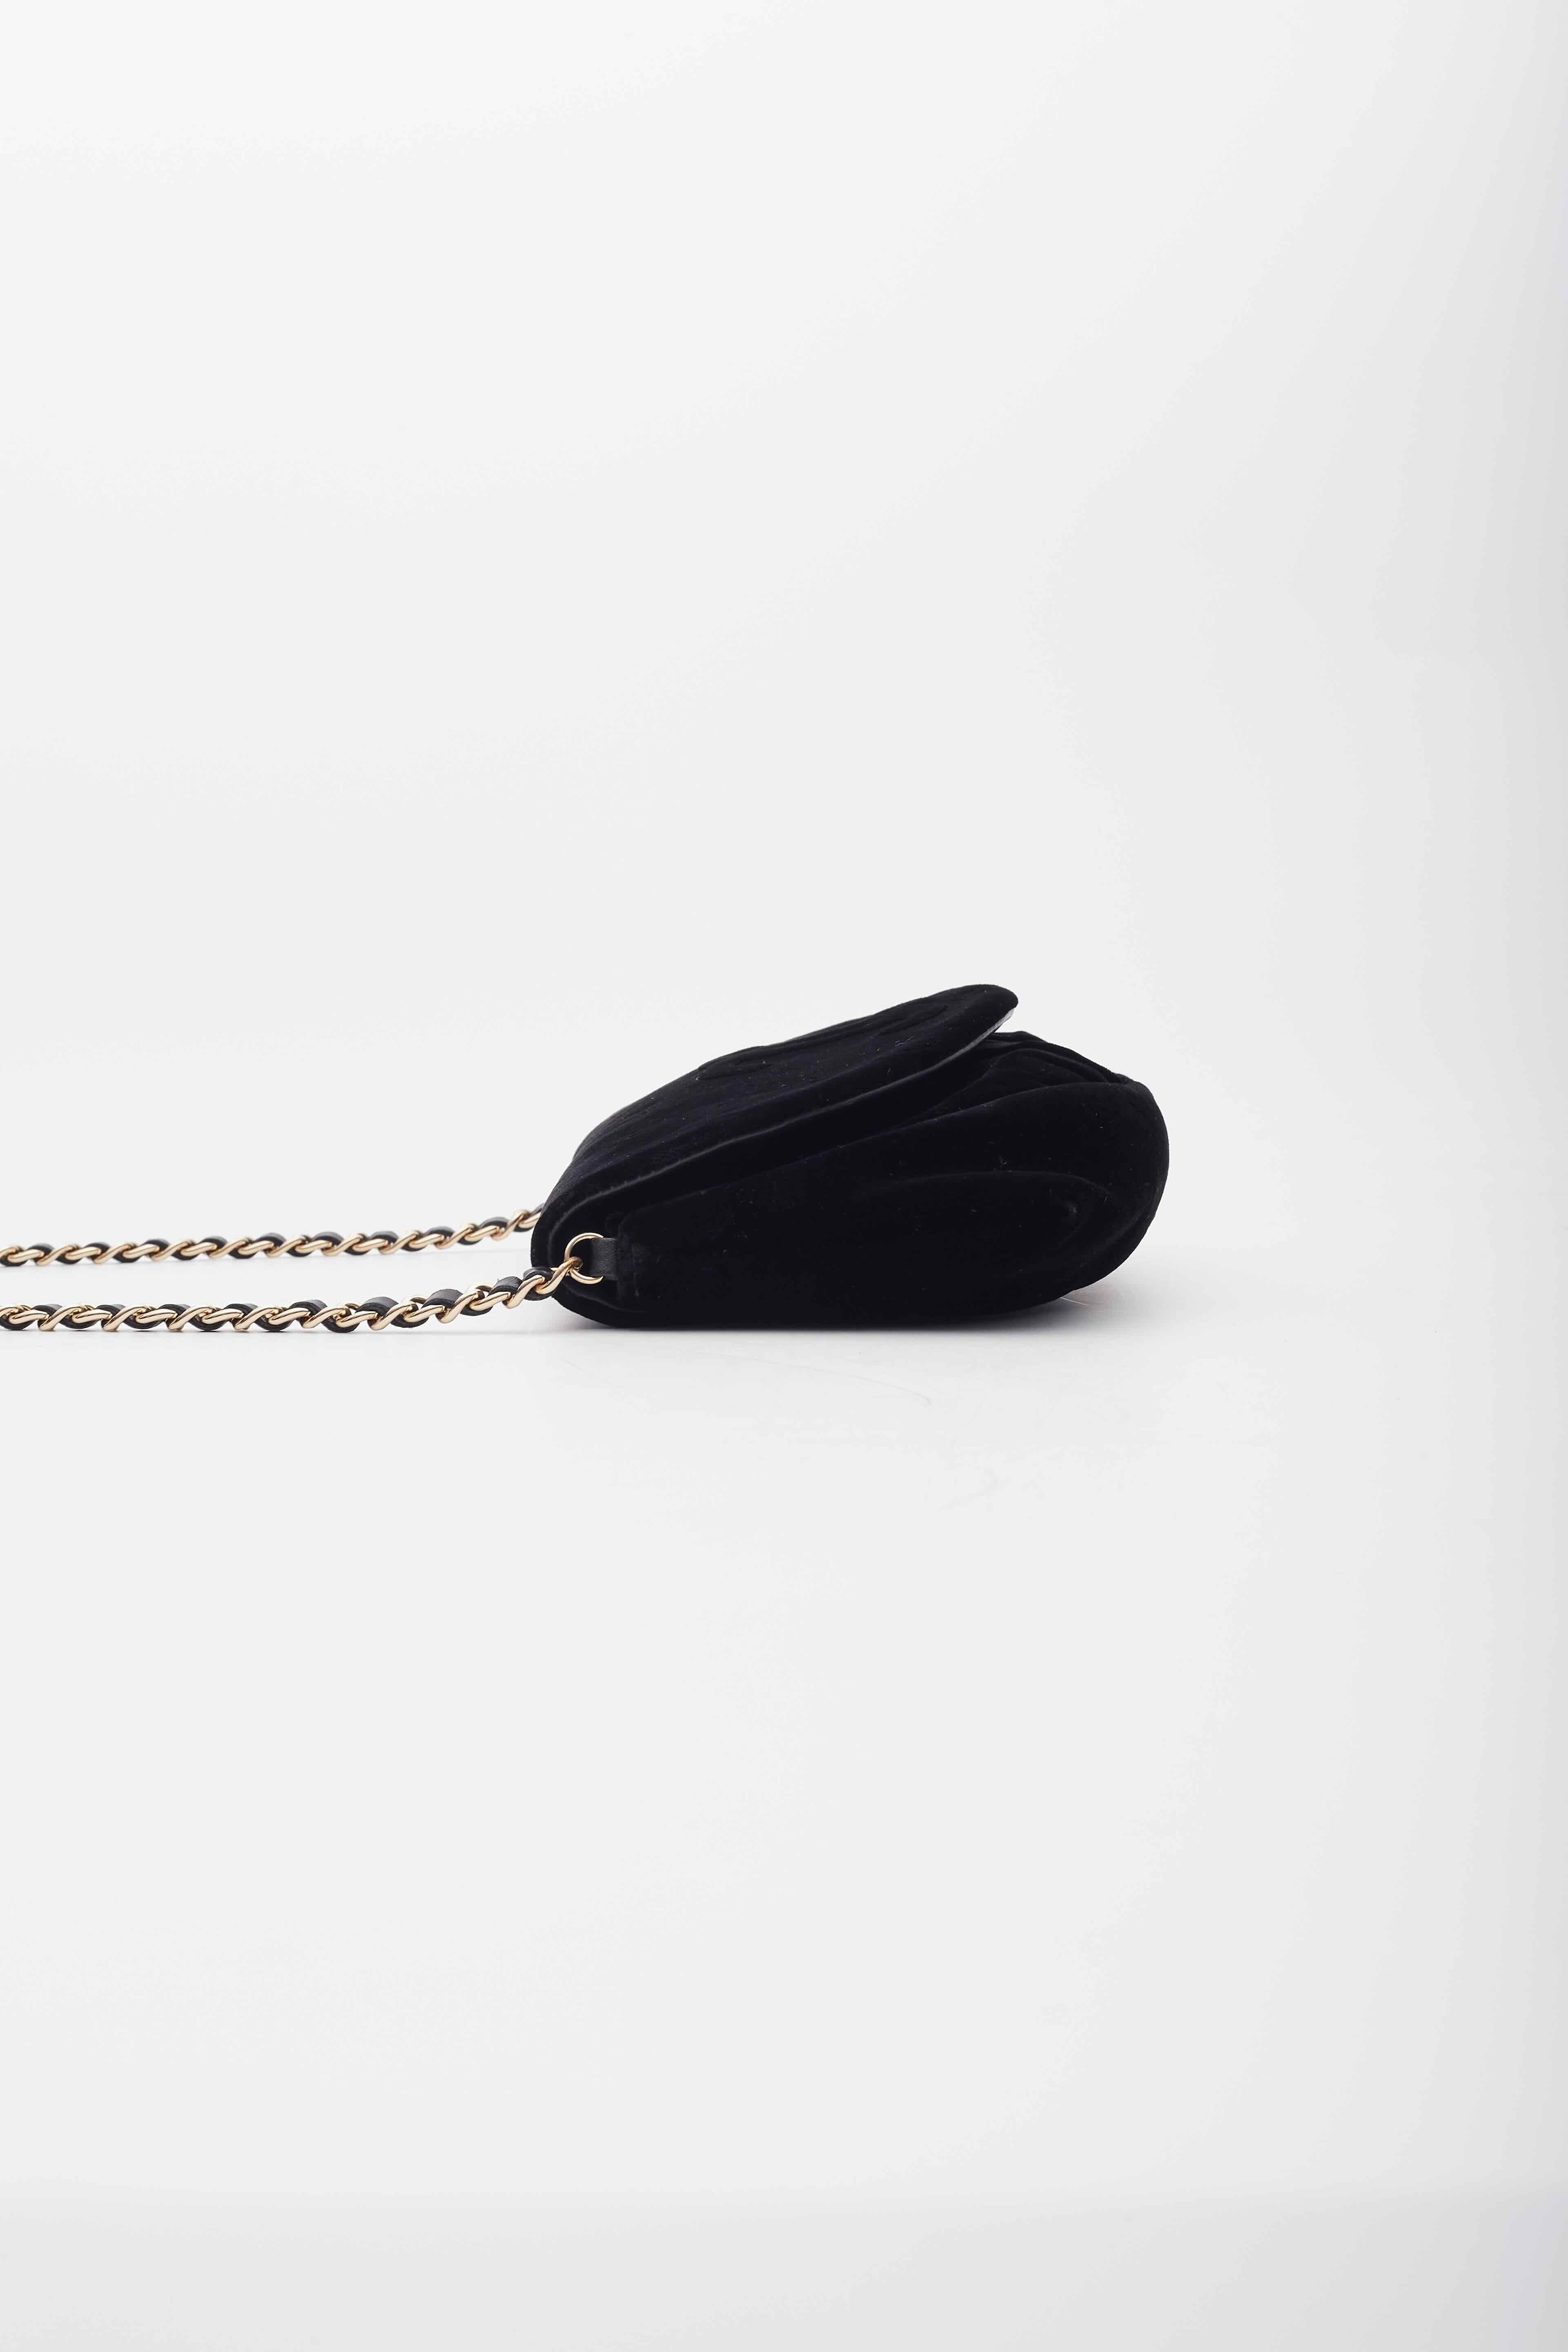 Women's Chanel Velvet Half Moon Black Wallet on Chain Bag For Sale